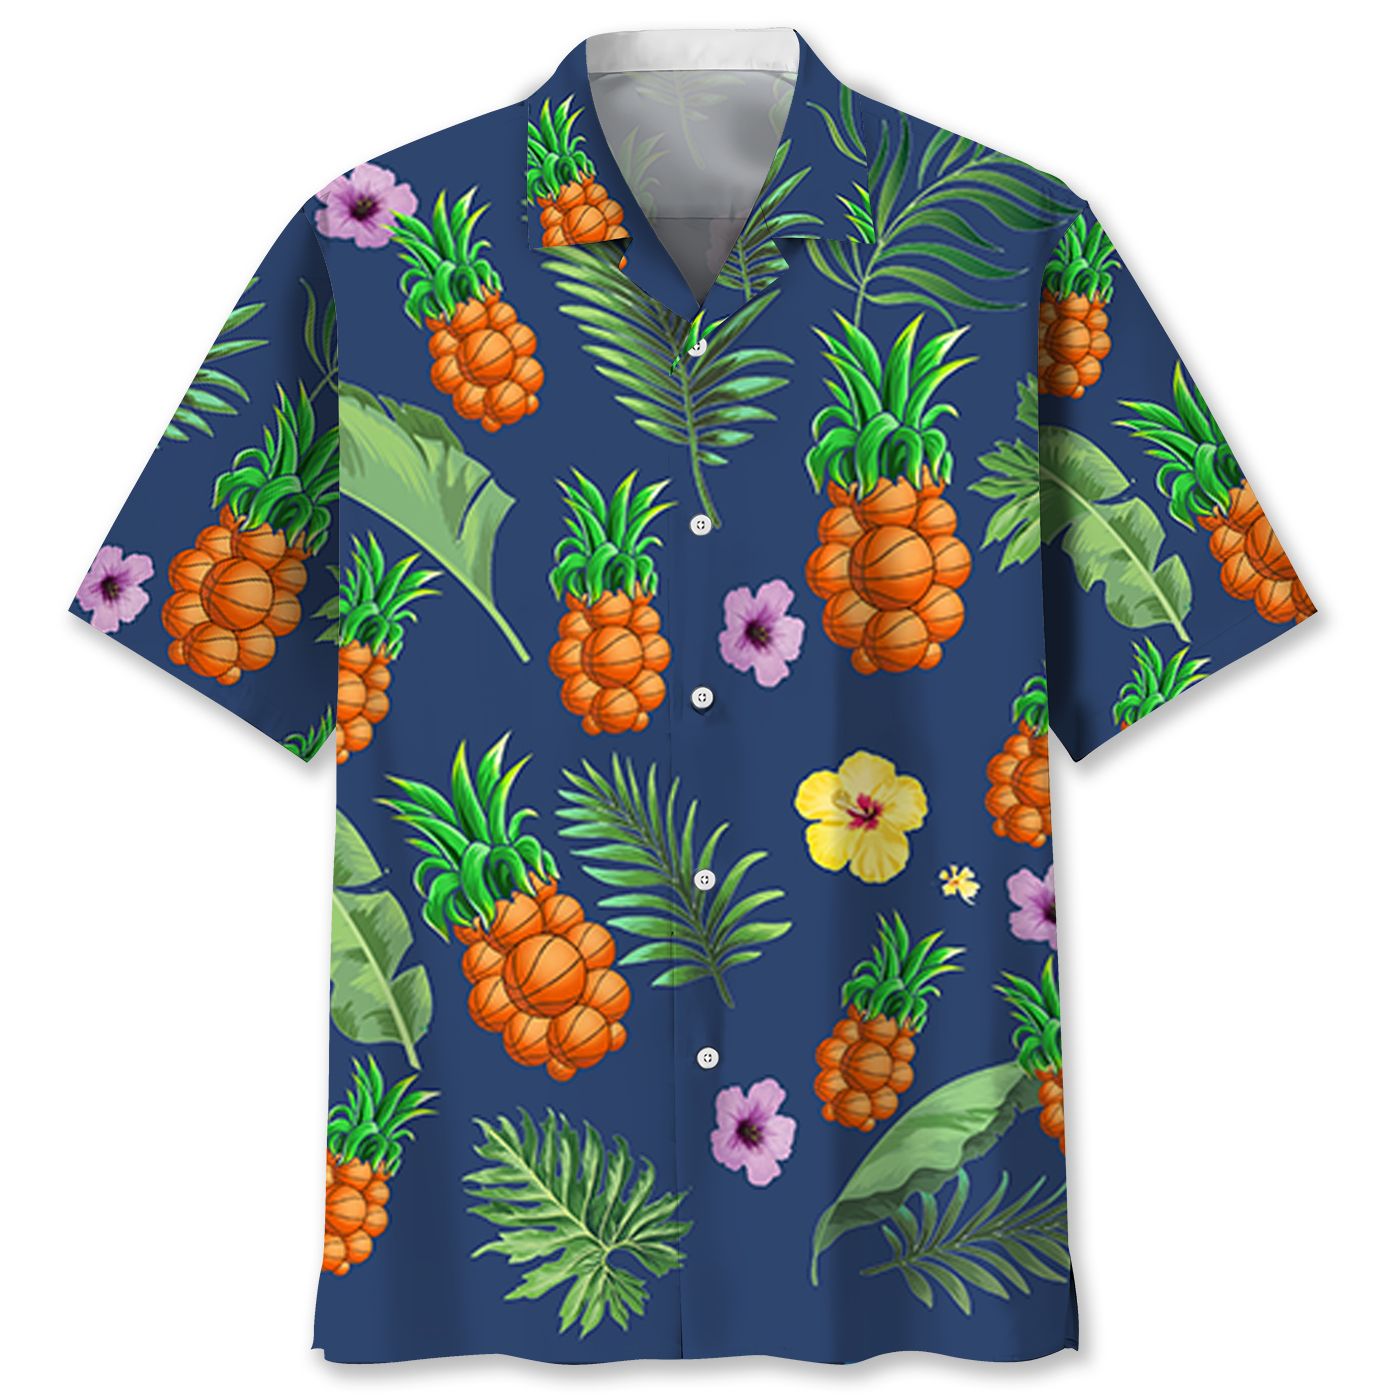 Baseketball pineapple Hawaiian shirt and short – LIMITED EDITION